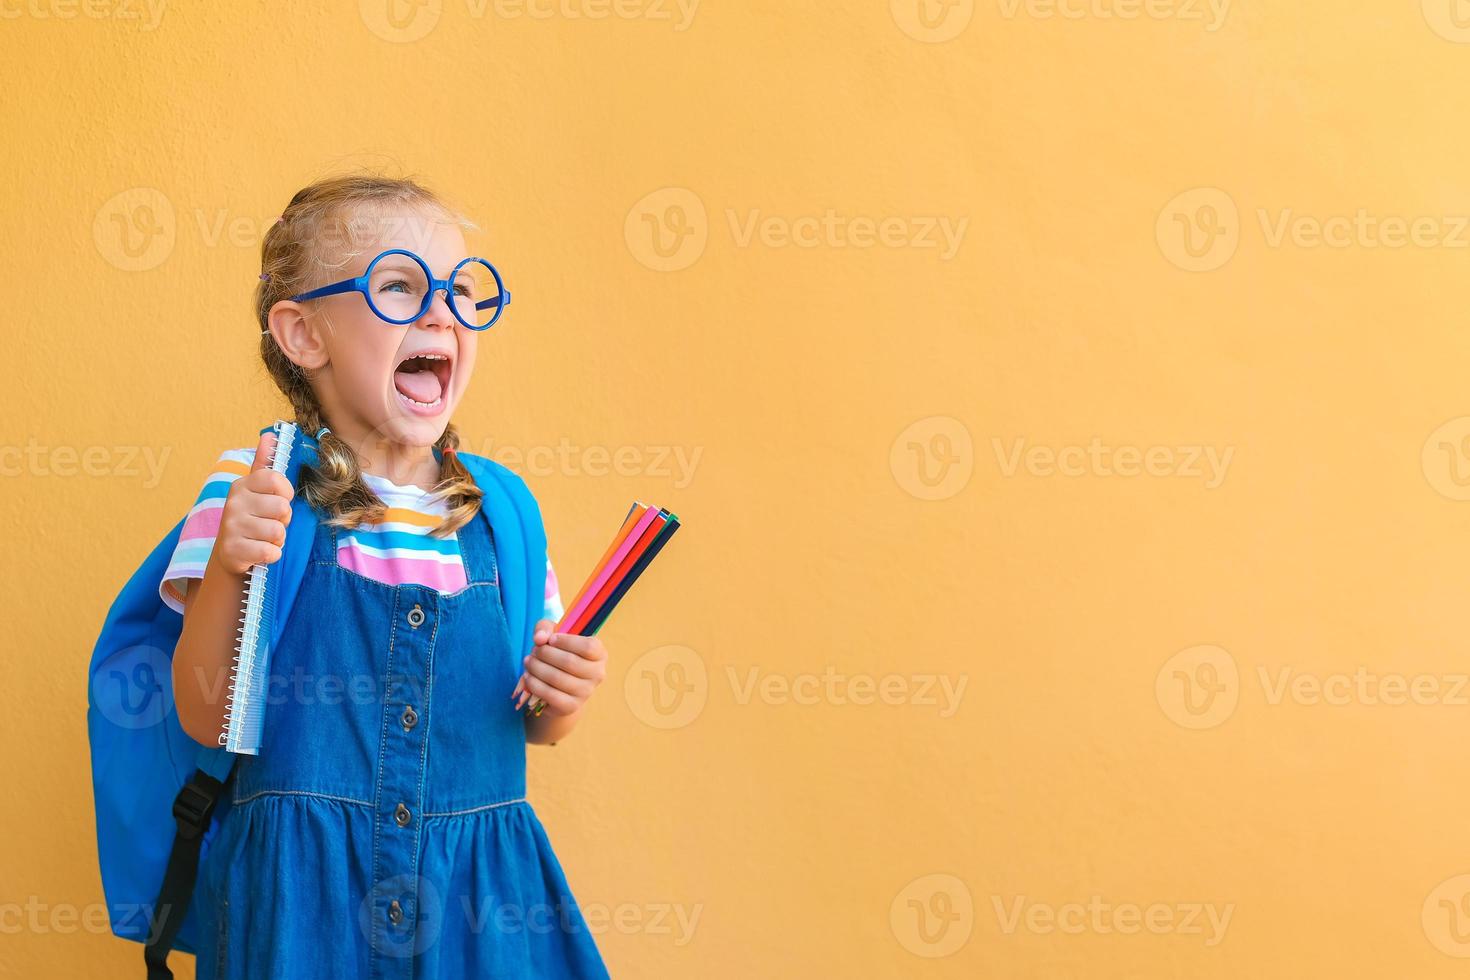 emocional emocionada sorpresa cara colegiala niña con gafas en uniforme escolar sostiene lápices de colores, cuaderno, mochila boca abierta para vaciar el espacio de copia atento aislado en fondo amarillo foto